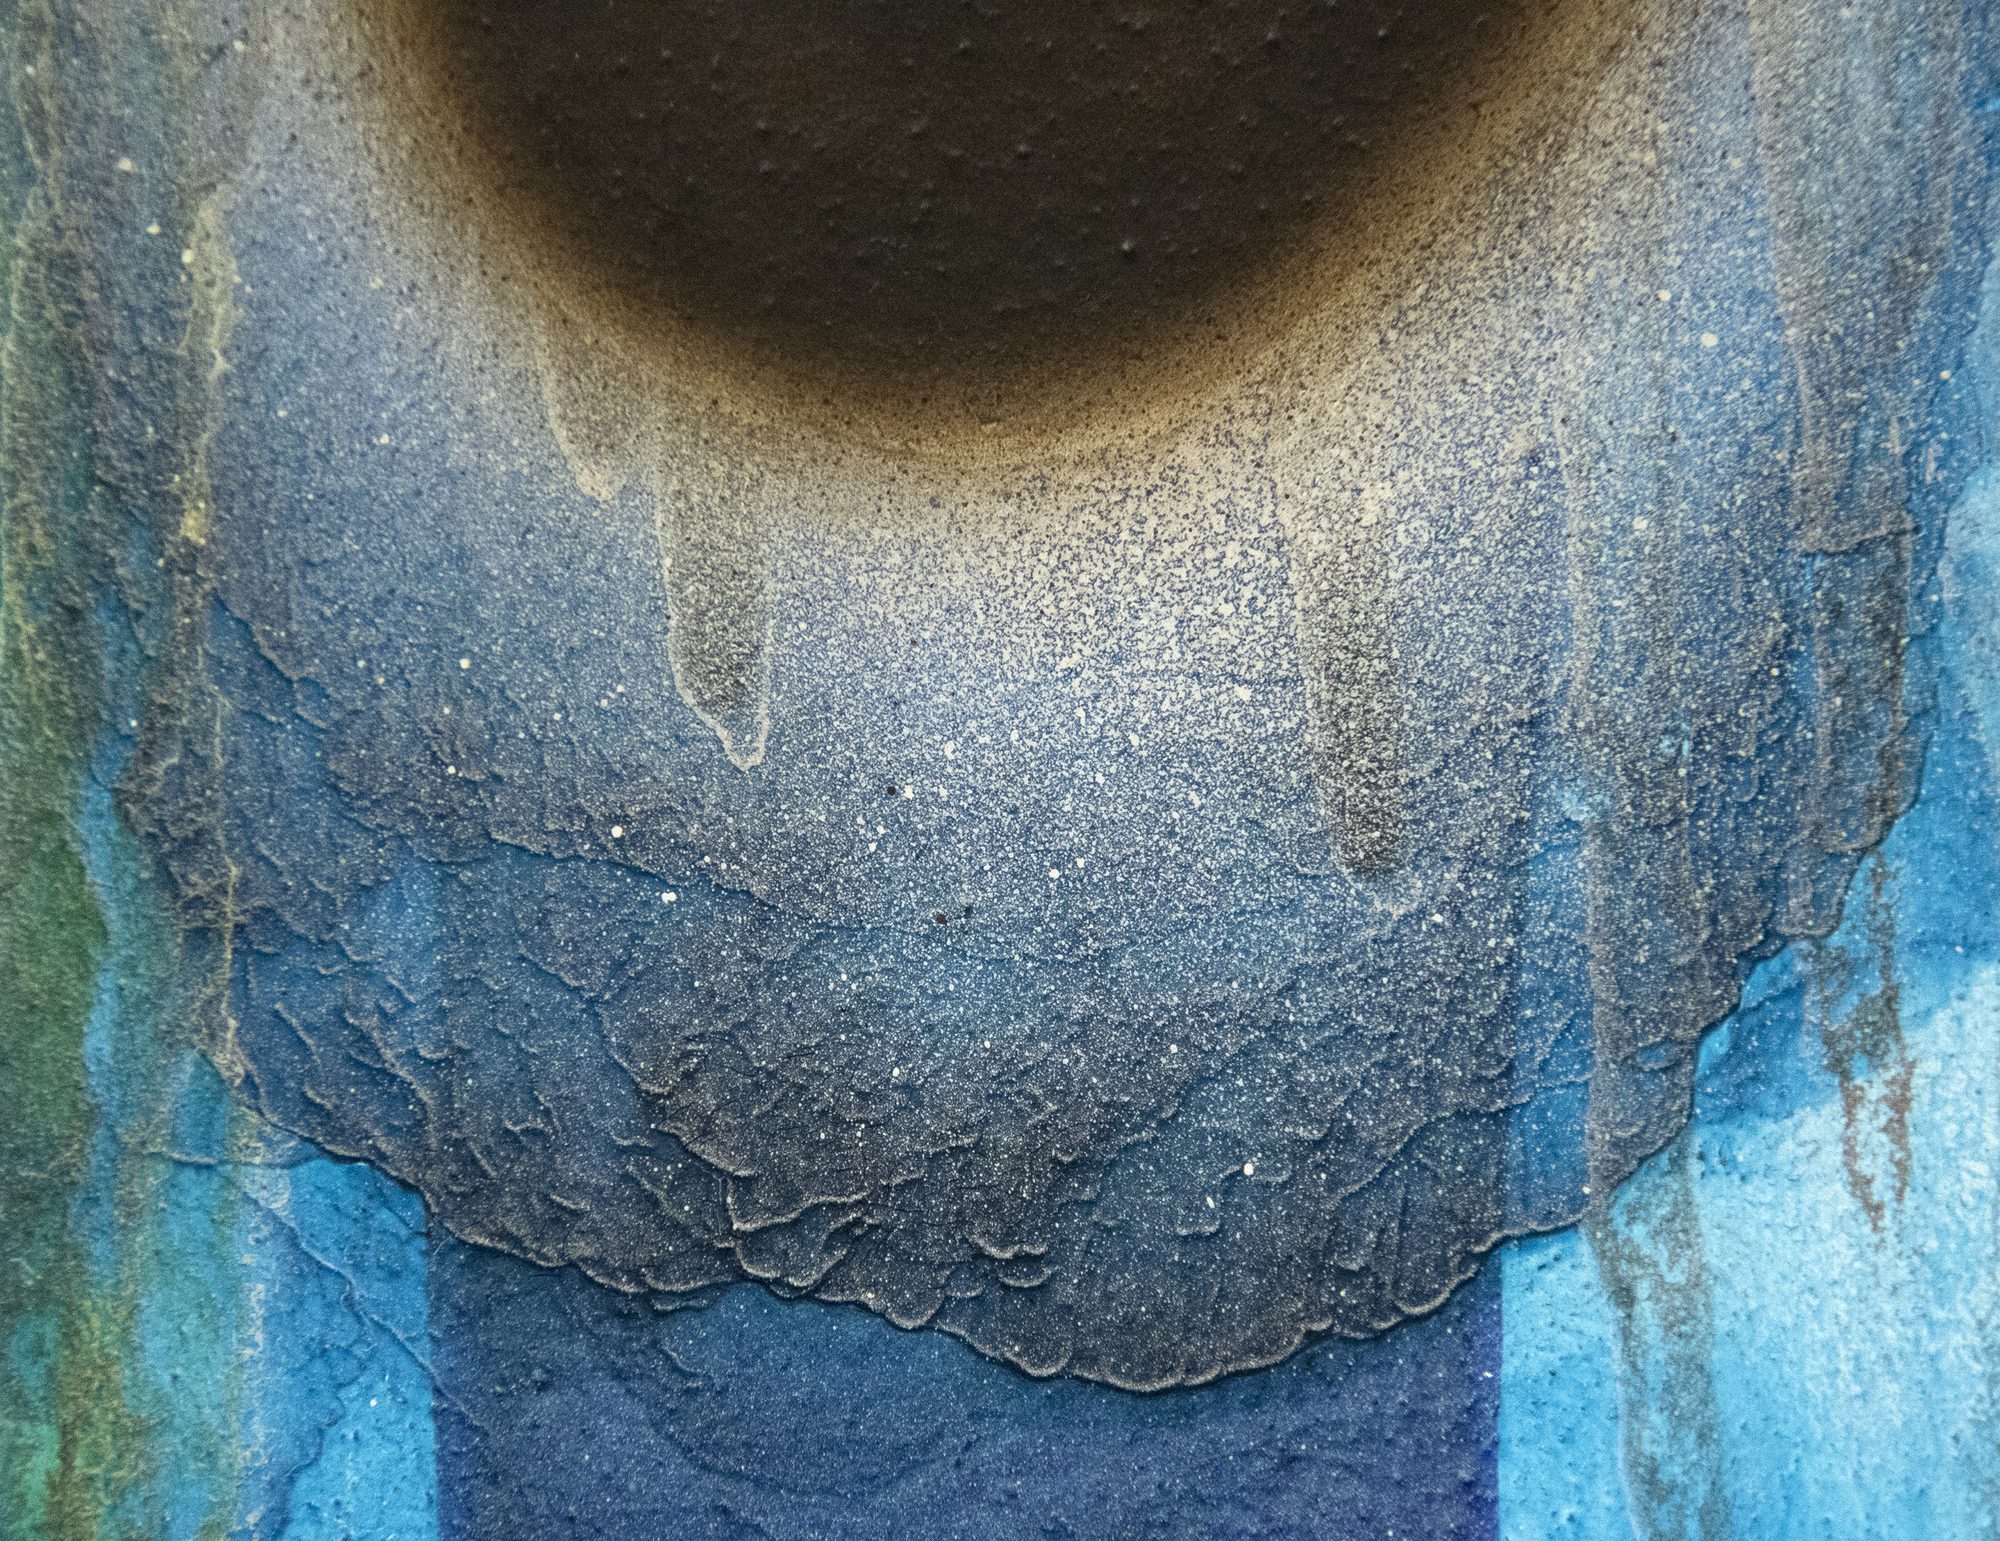 كعضو في جمعية غوتاي الأسطورية للفنون التي ازدهرت بين عامي 1954 و 1972، ظهرت سادامسا موتوناغا عندما كانت الوجودية السريالية في مرحلة ما بعد الذرية في طليعة التطور الفني في اليابان. ومع ذلك اختار مسارا مختلفا. أدار ظهره للدمار الذي سببته الحرب وخلق عملا جديدا ومبتهجا ومرحا. "بدون عنوان" من عام 1969 هو في أسلوبه الكلاسيكي، والتي وضعت بالتزامن مع موريس لويس 'ما يسمى لوحات 'الحجاب'. إنه عرض ناجح ببراعة لطليعة موتوناغا على التاراشيكومي الياباني التقليدي - التقنية التي تنطوي على إمالة القماش في زوايا مختلفة للسماح لخليط من الراتنج والمينا بالتدفق على بعضها البعض قبل أن يجف الطلاء تماما.